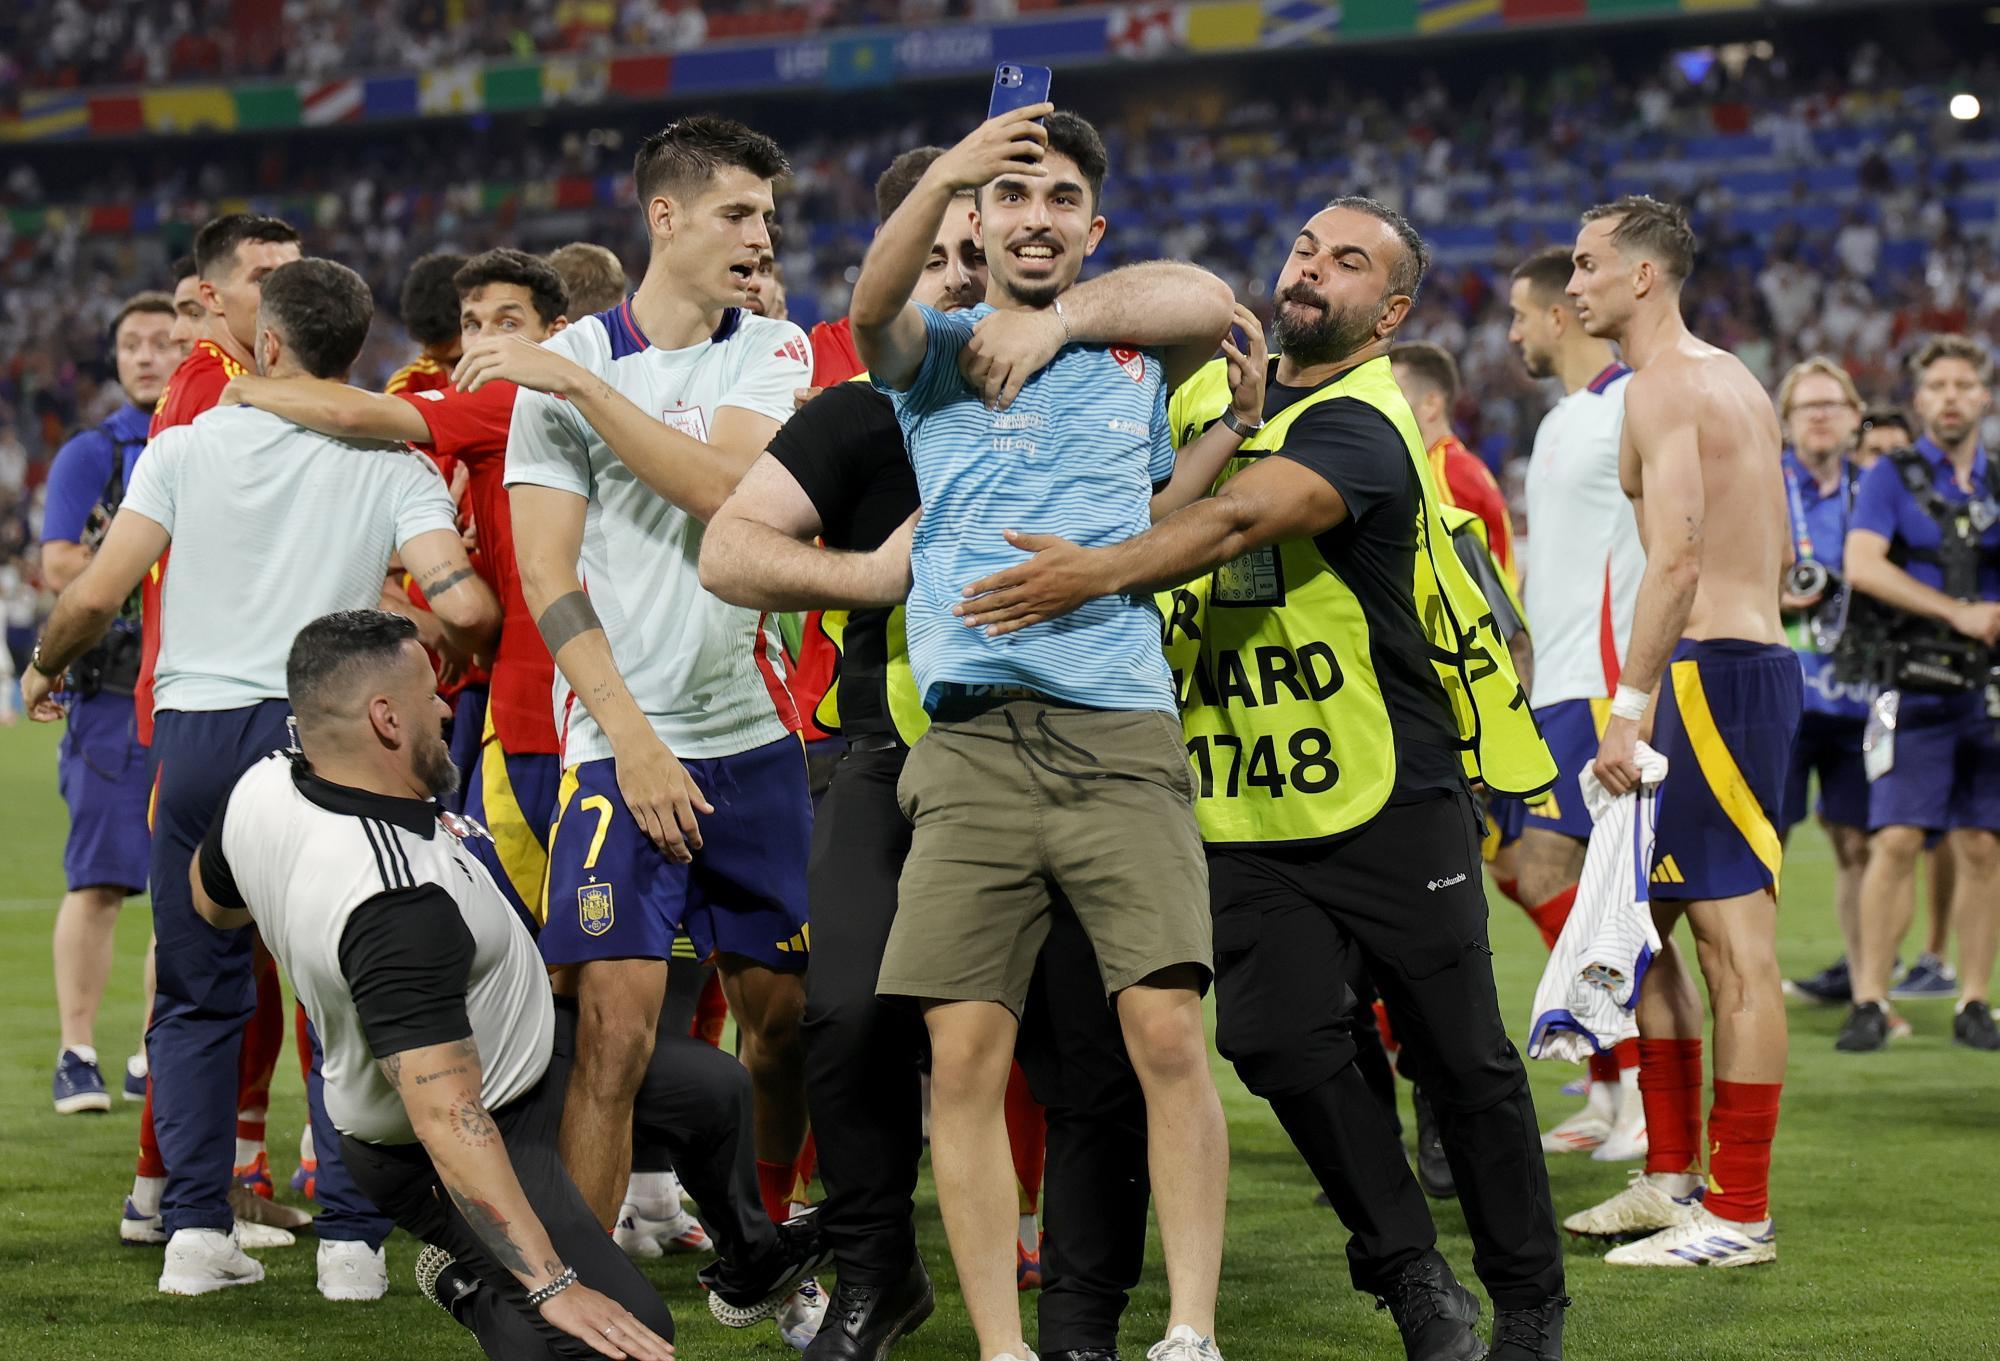 Irre Flitzer-Szene nach EM-Finaleinzug: Spanien-Star von Ordner umgegrätscht